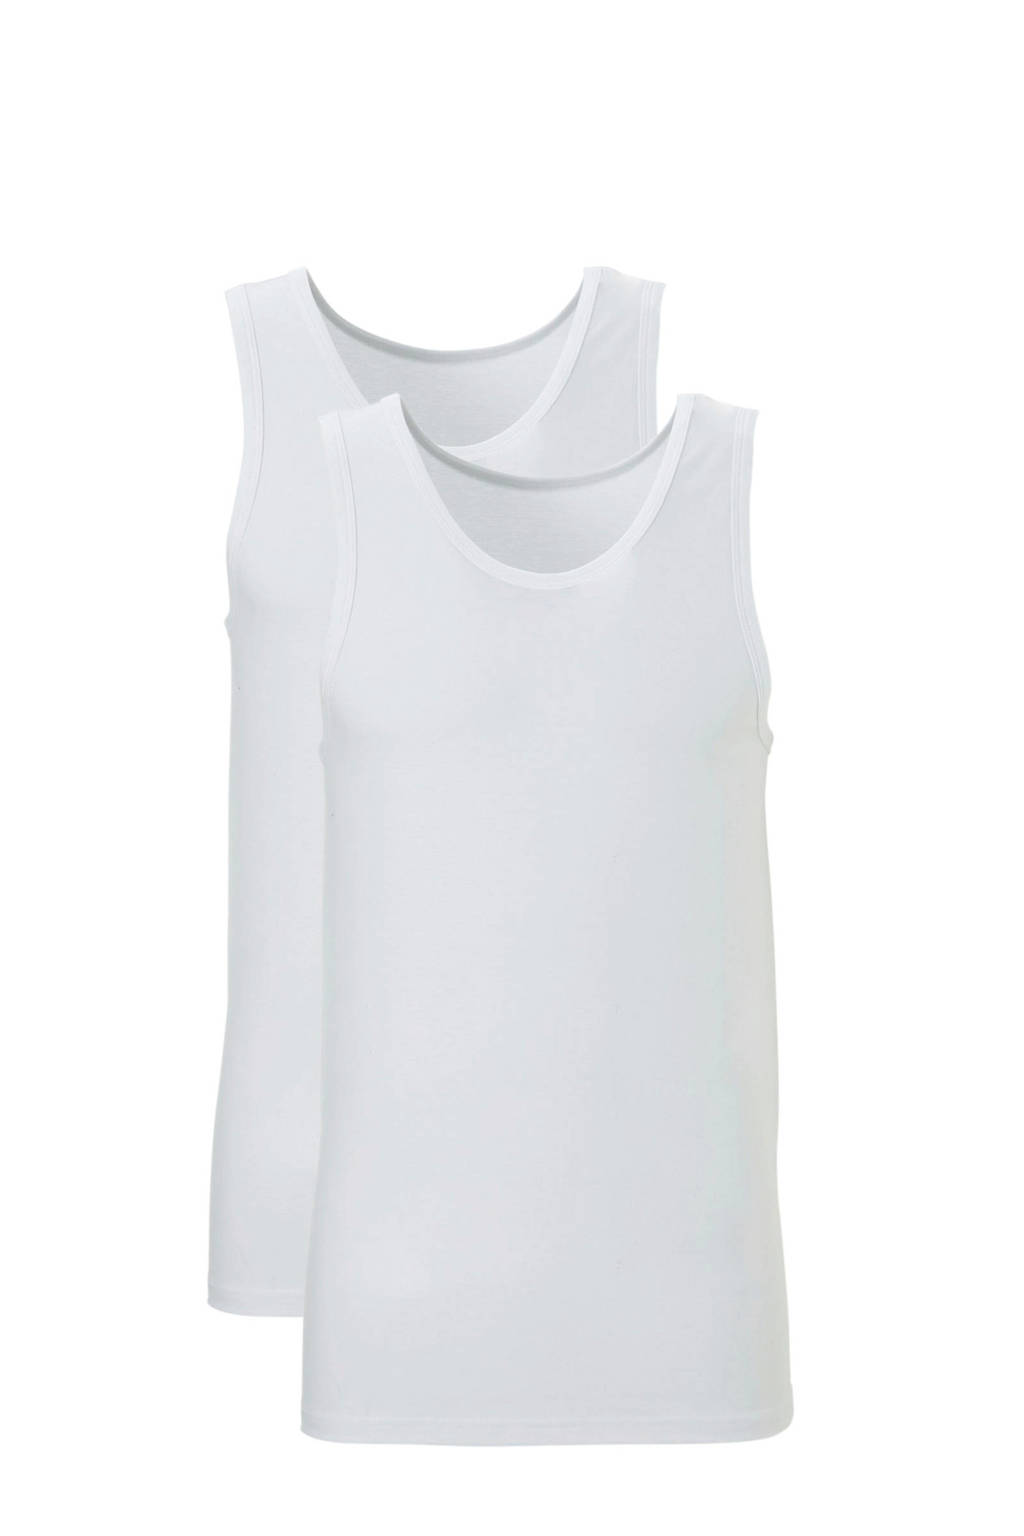 ten Cate hemd (set van 2) wit, Wit